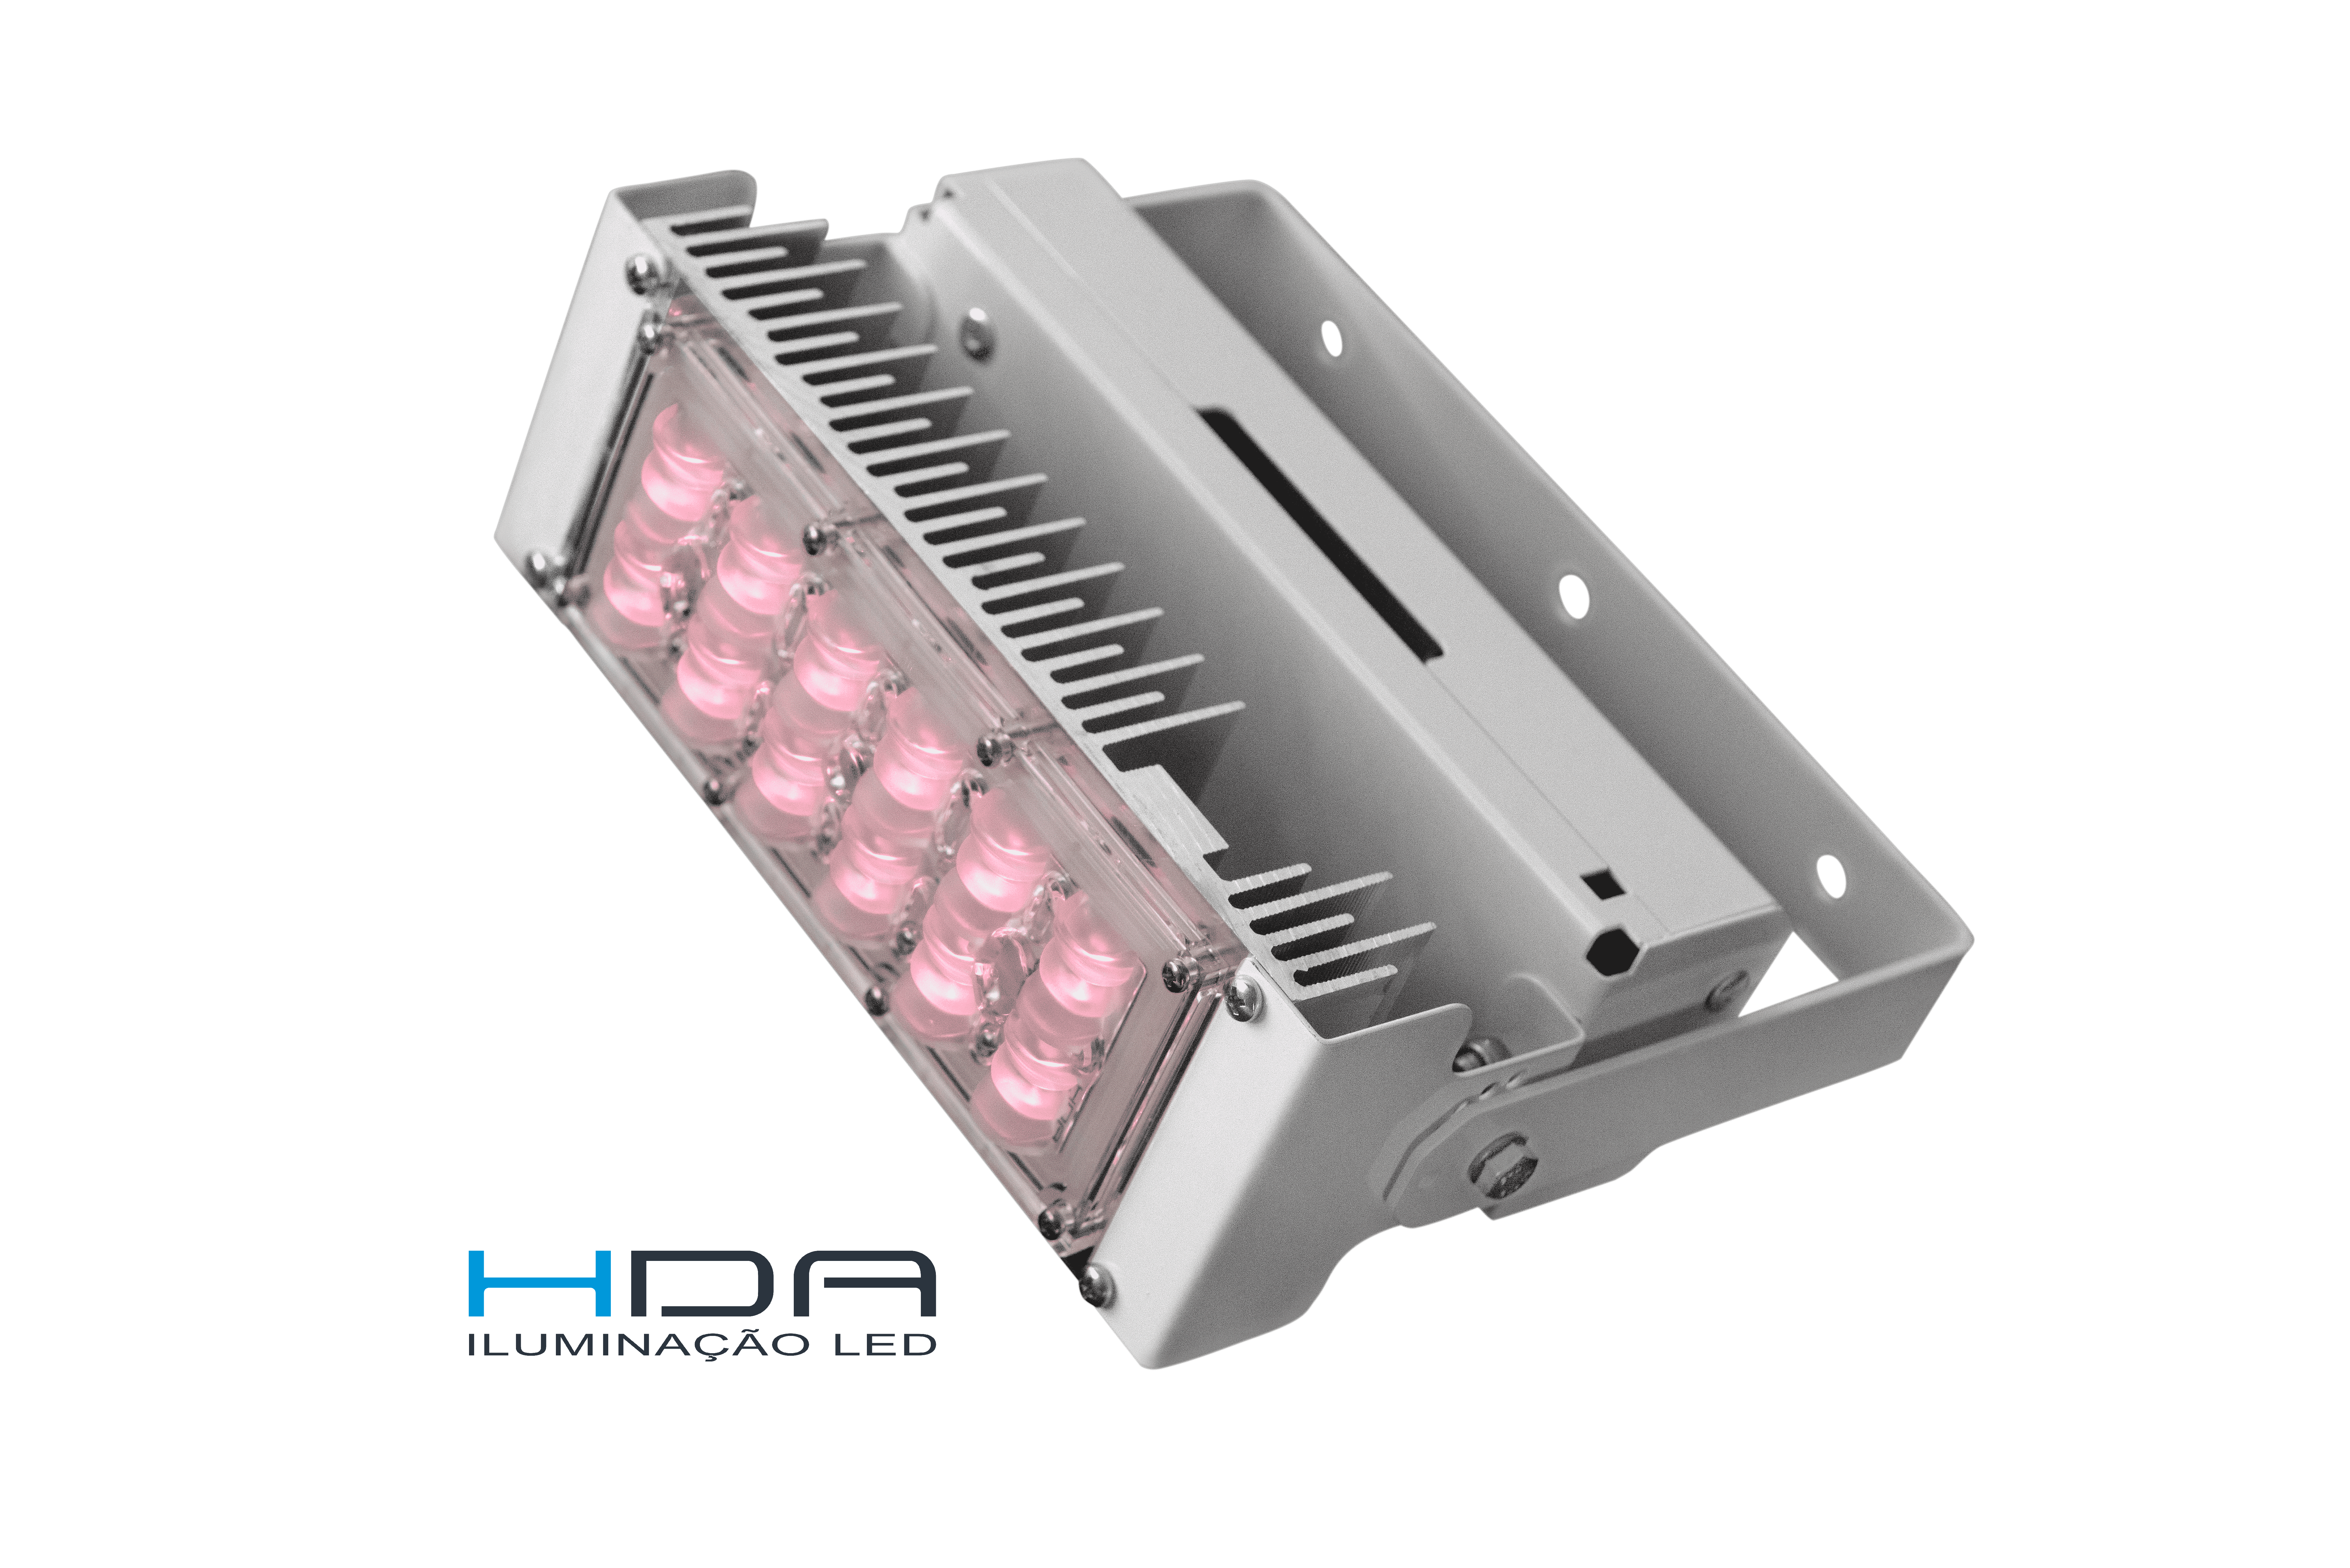 LED HDA 002 INFRARED